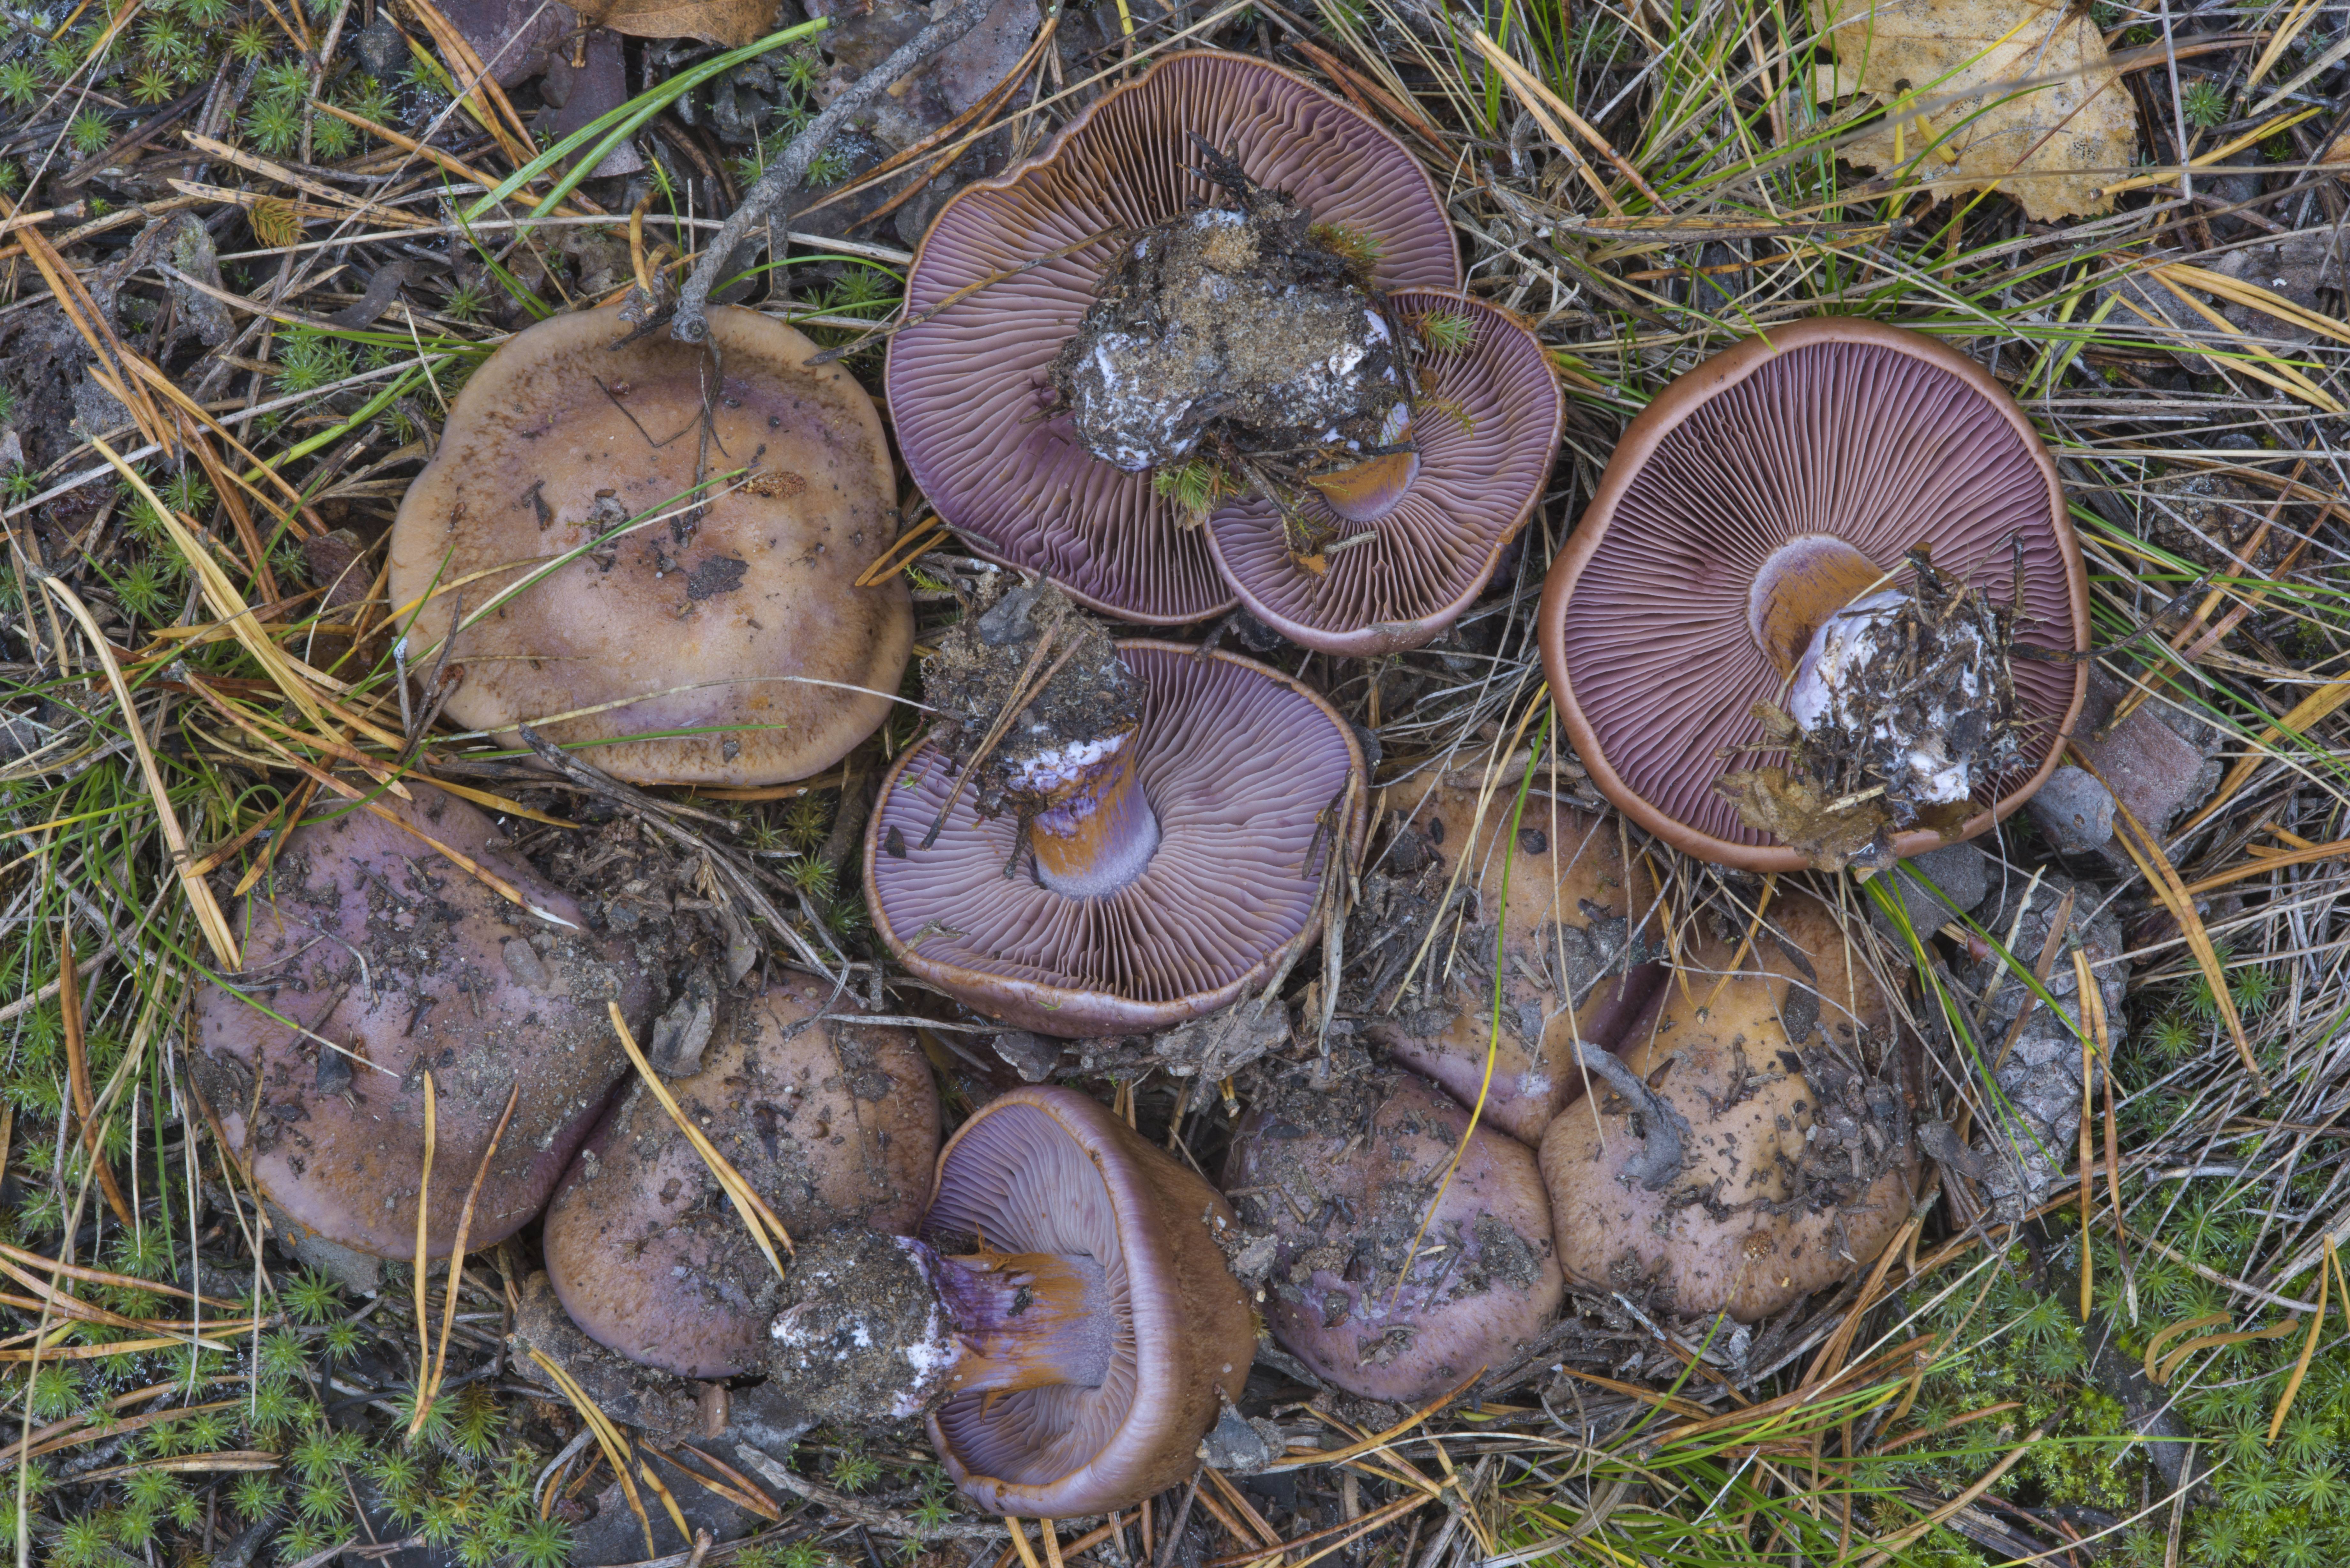 Паутинник фиолетовый - фото и описание съедобного гриба из красной книги, где растет и как готовить